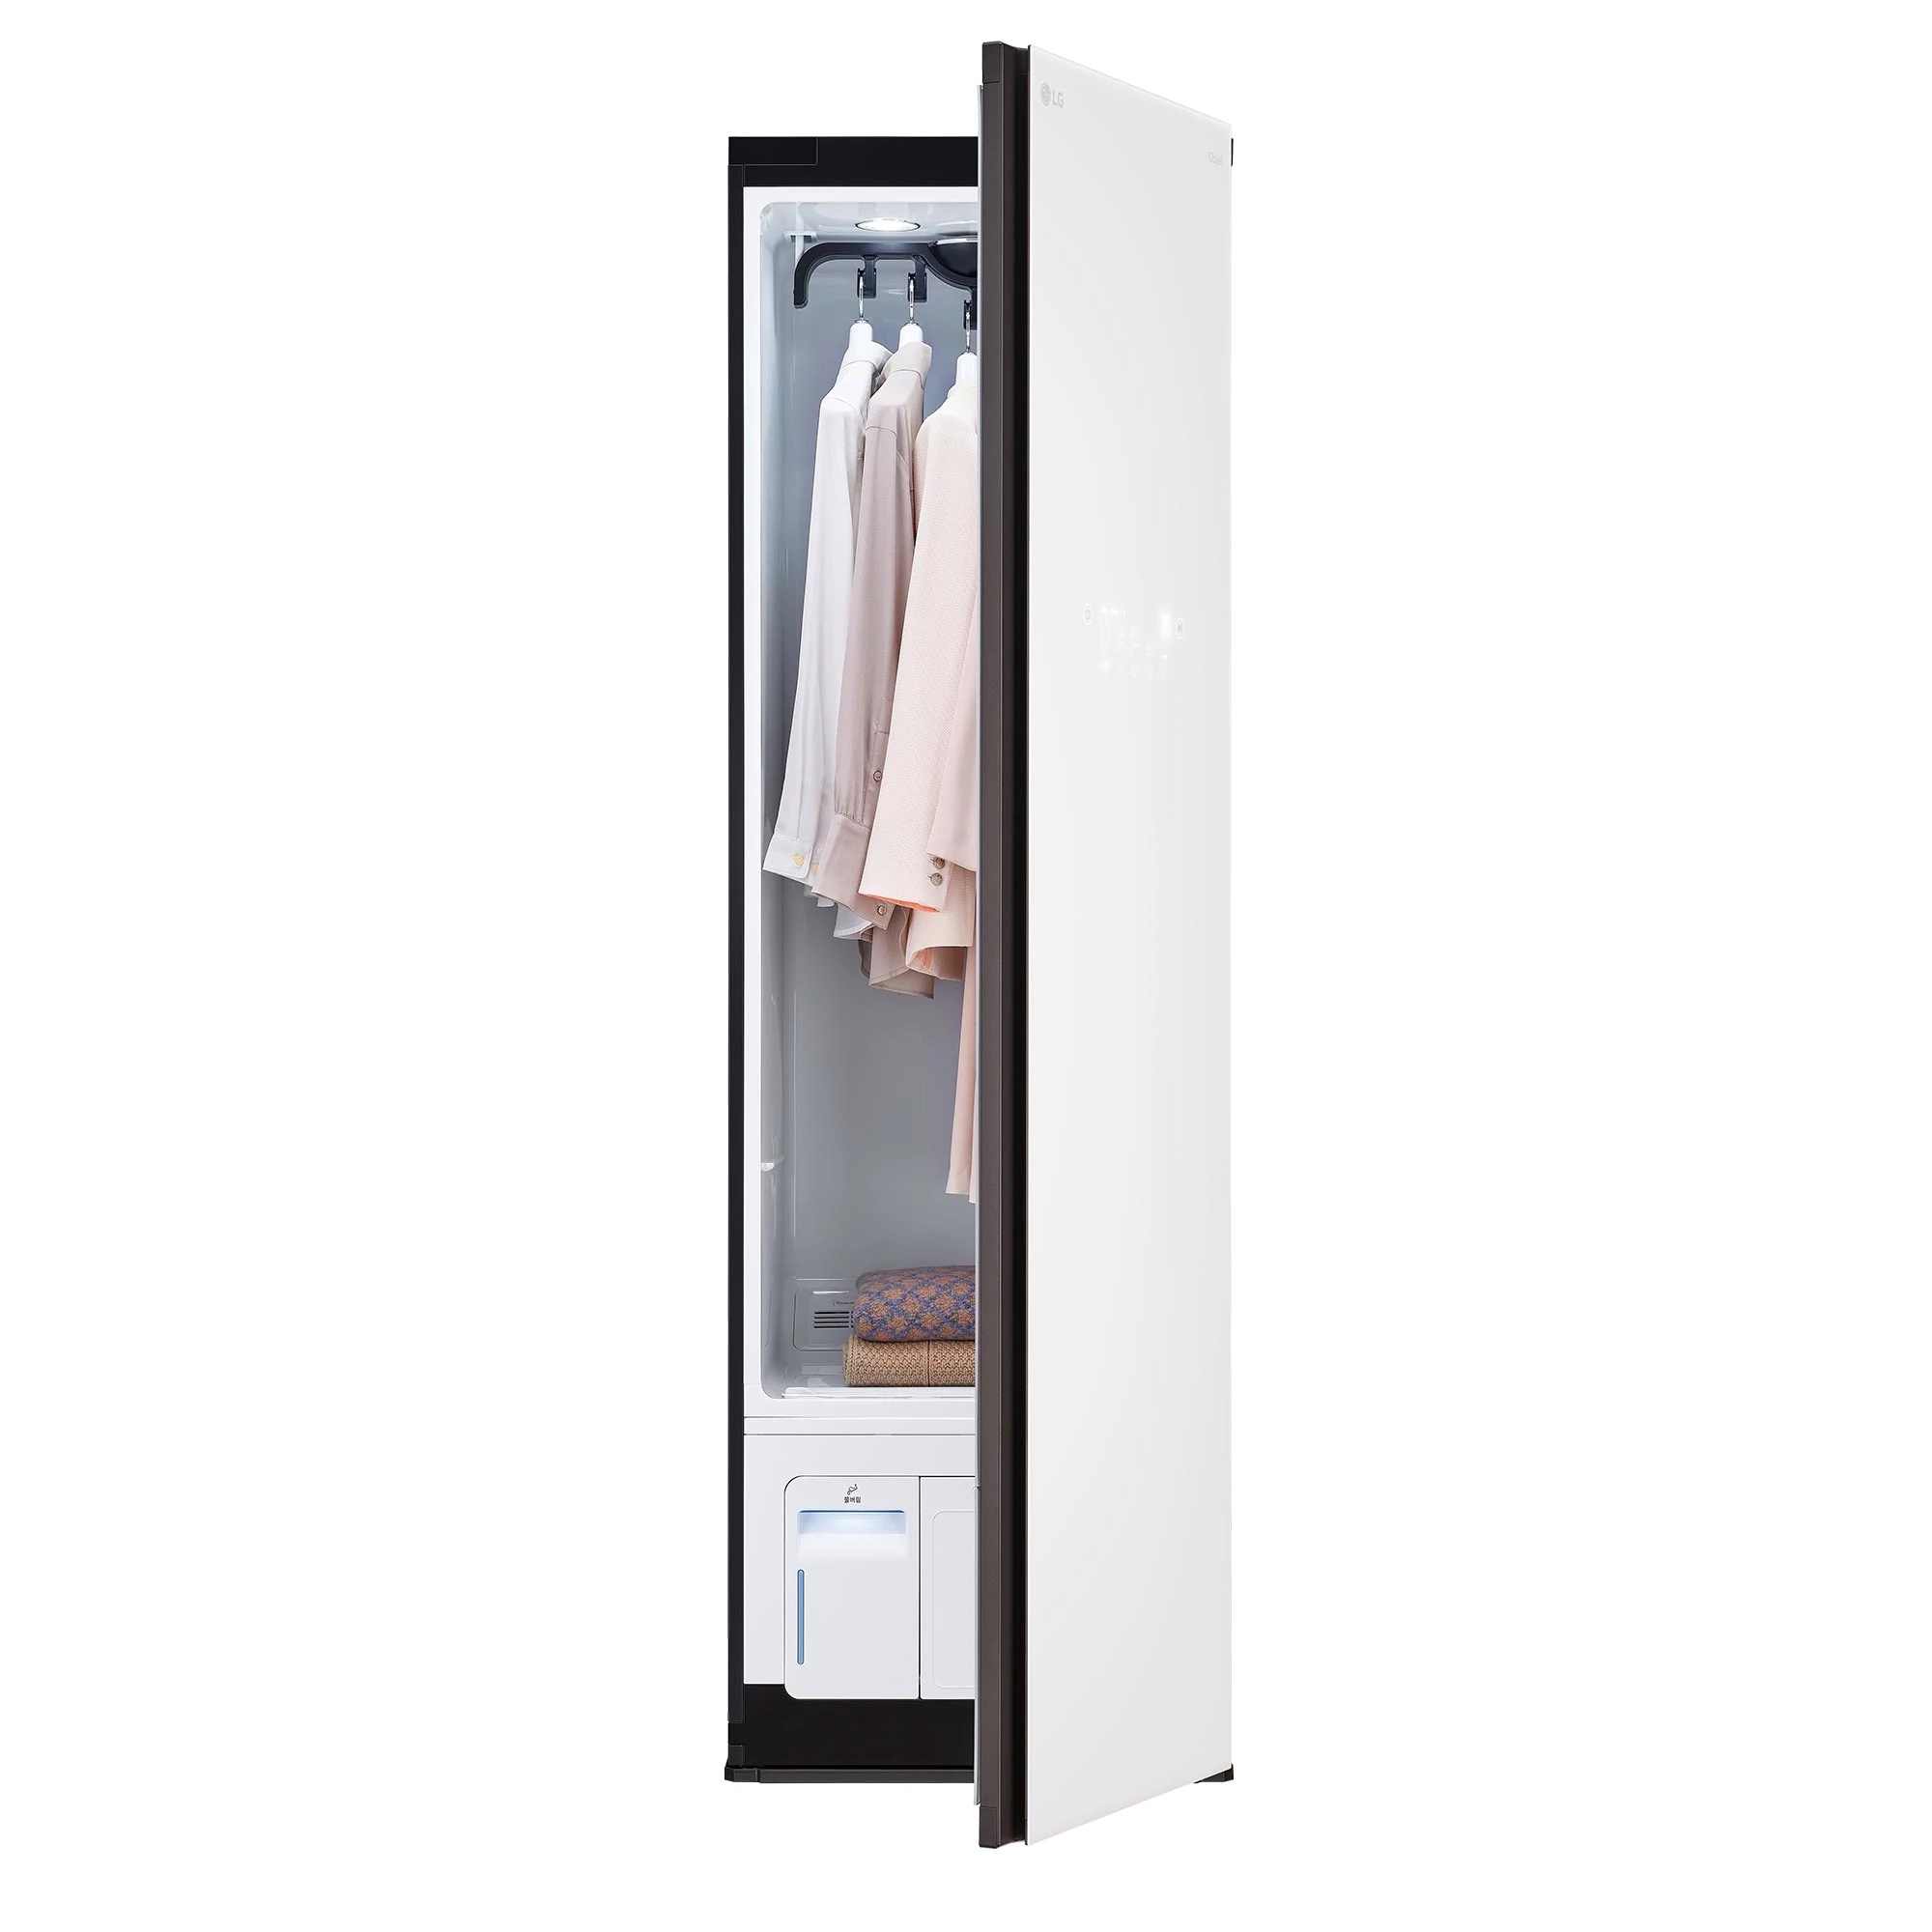 Máy giặt hấp sấy LG Styler Object Collection 2022 (S5WBP) - Trắng kem